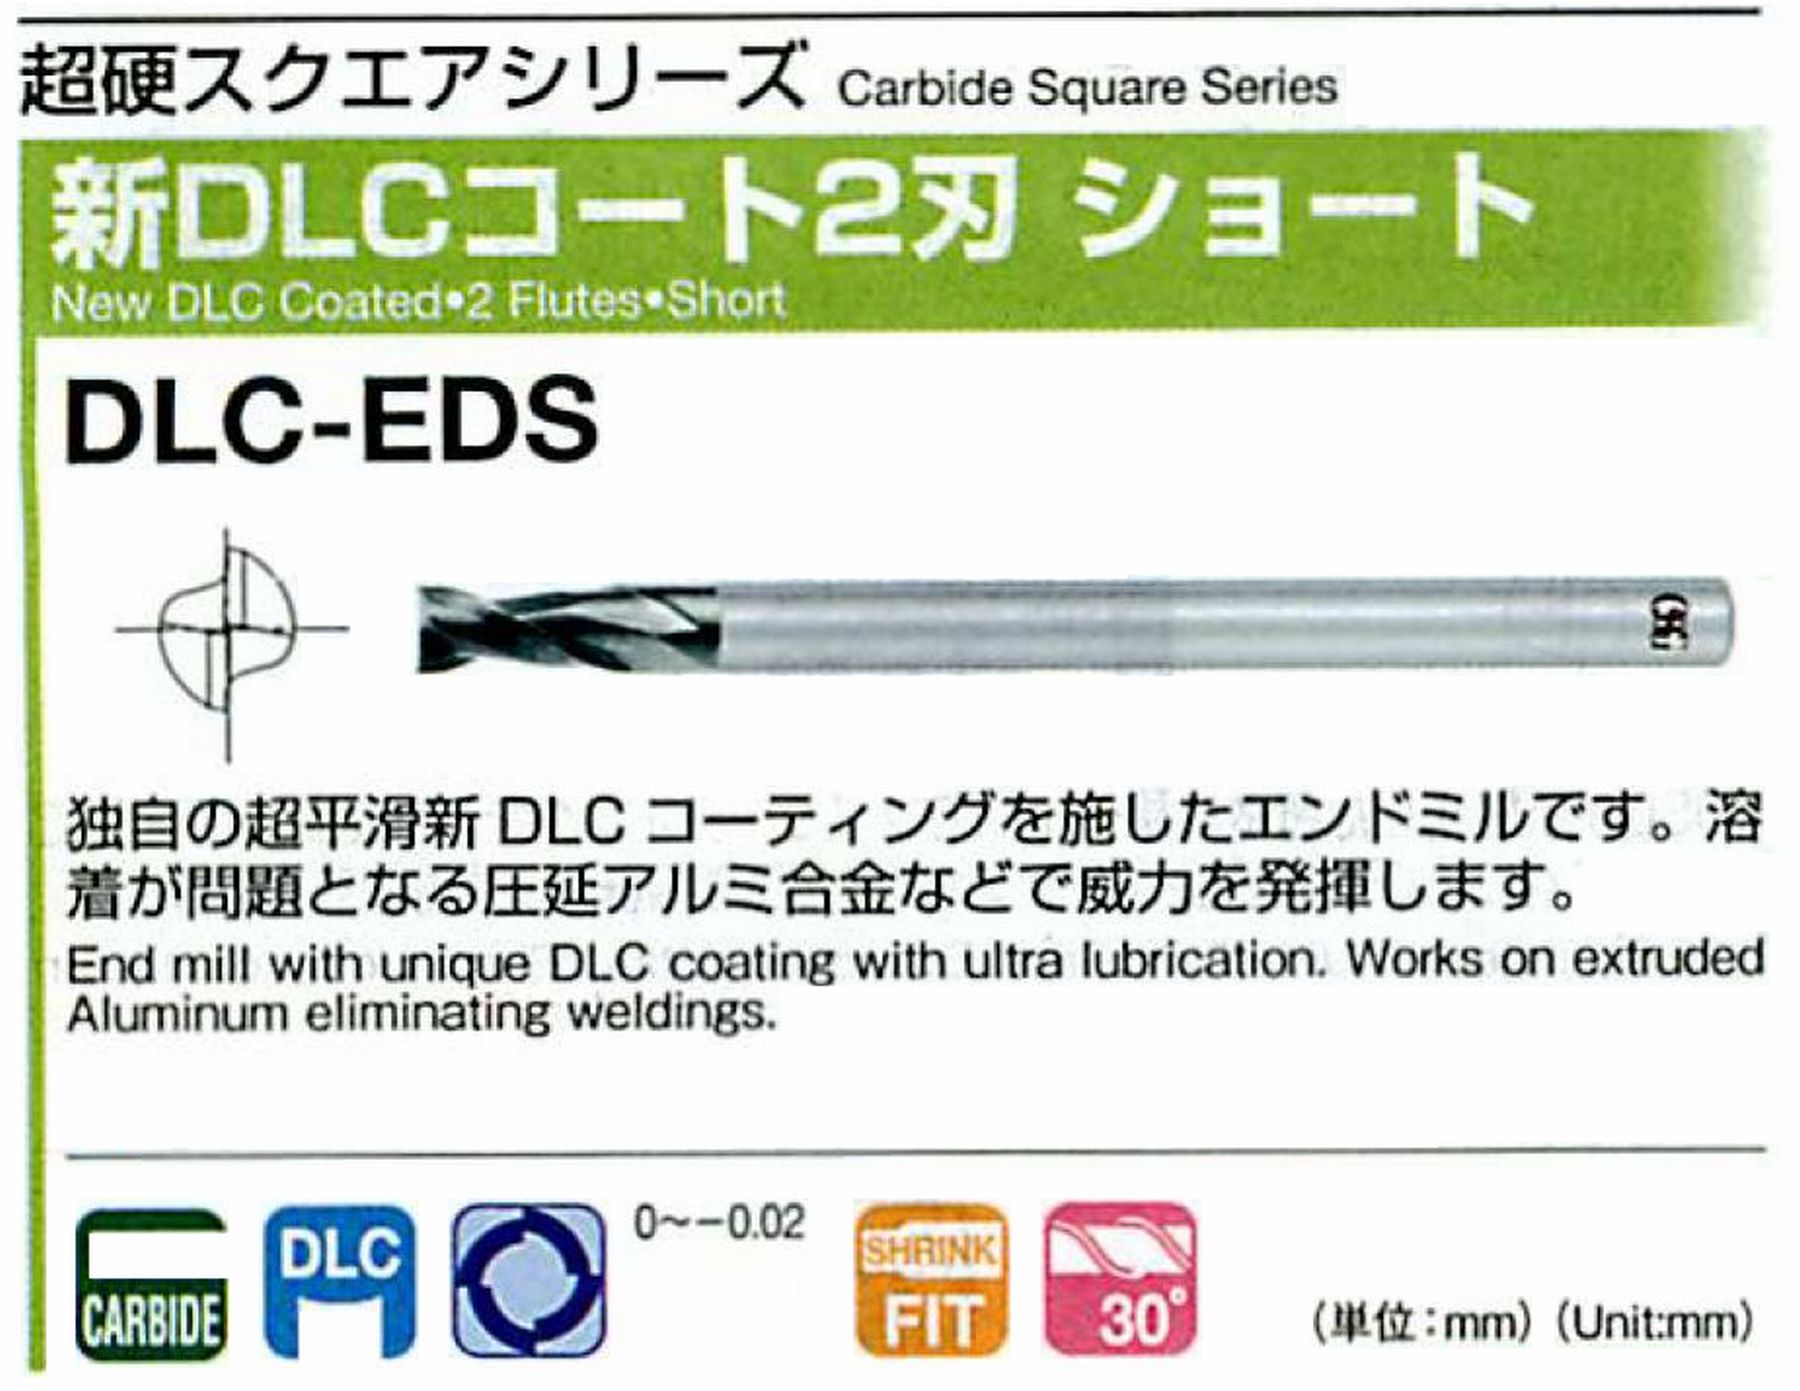 オーエスジー/OSG 新DLCコート 2刃ショート DLC-EDS 外径1.2 全長40 刃長2.4 シャンク径4mm